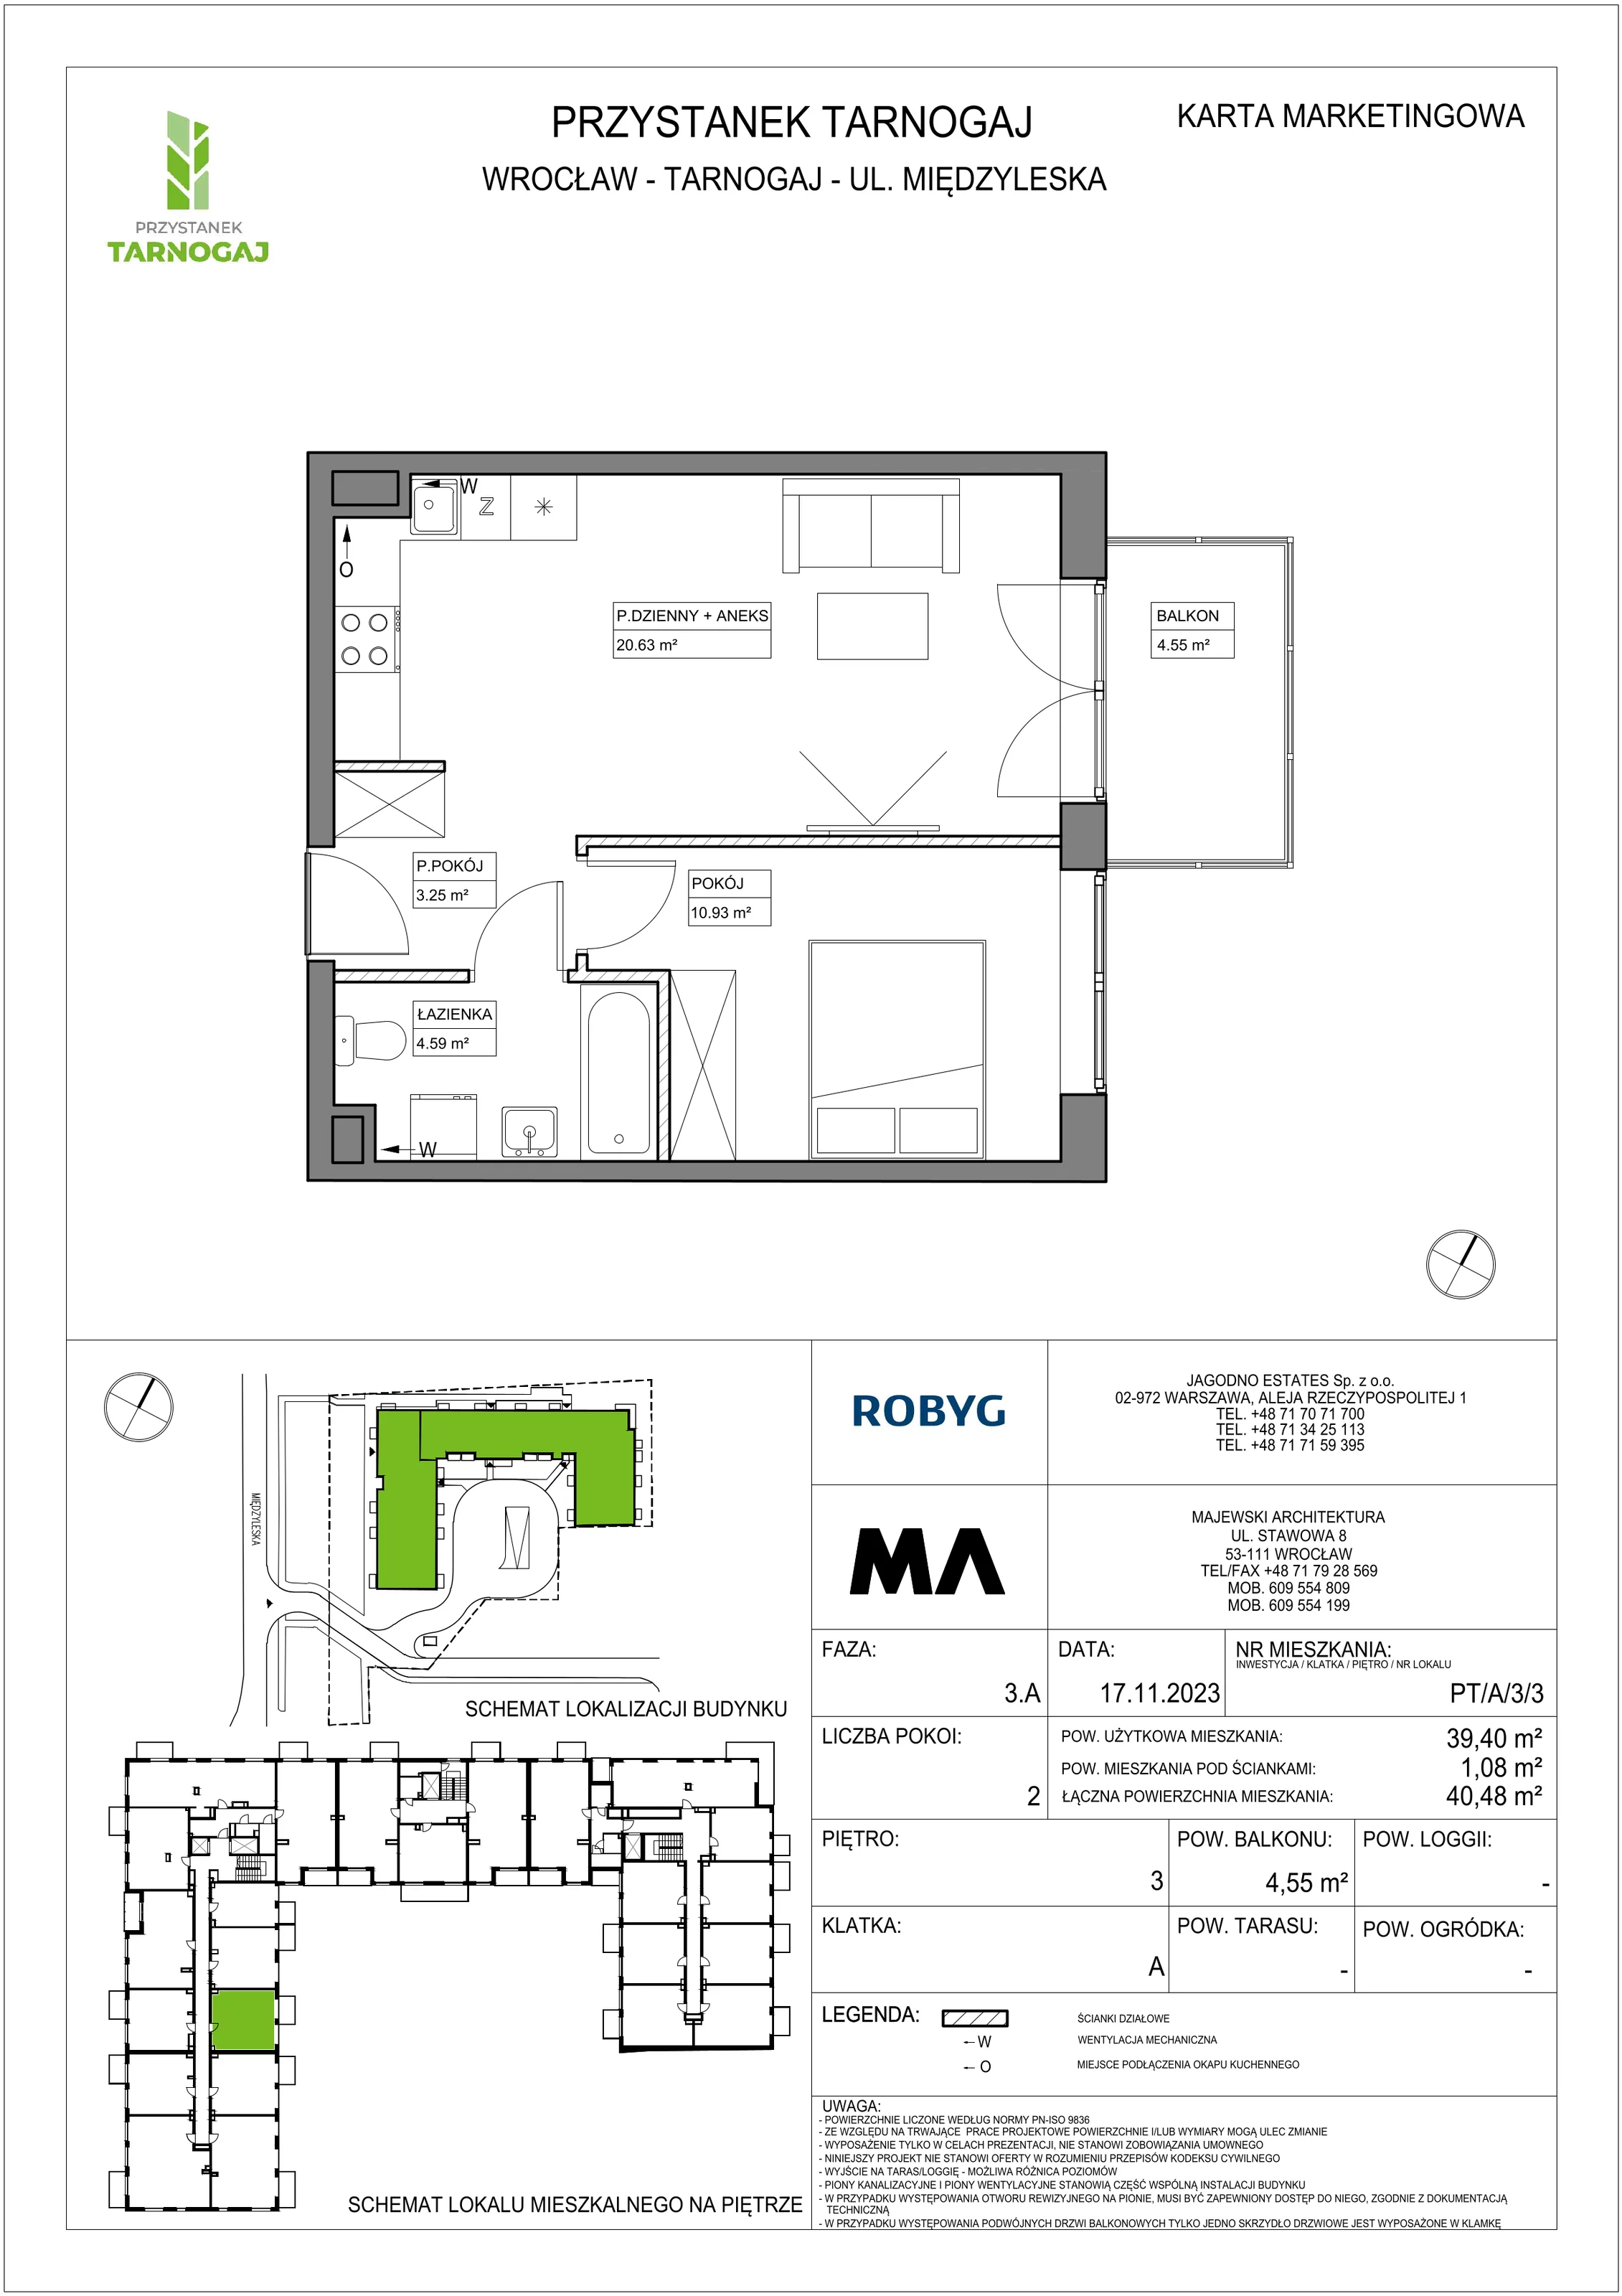 Mieszkanie 39,40 m², piętro 3, oferta nr PT/A/3/3, Przystanek Tarnogaj, Wrocław, Tarnogaj, Krzyki, ul. Międzyleska / Gazowa